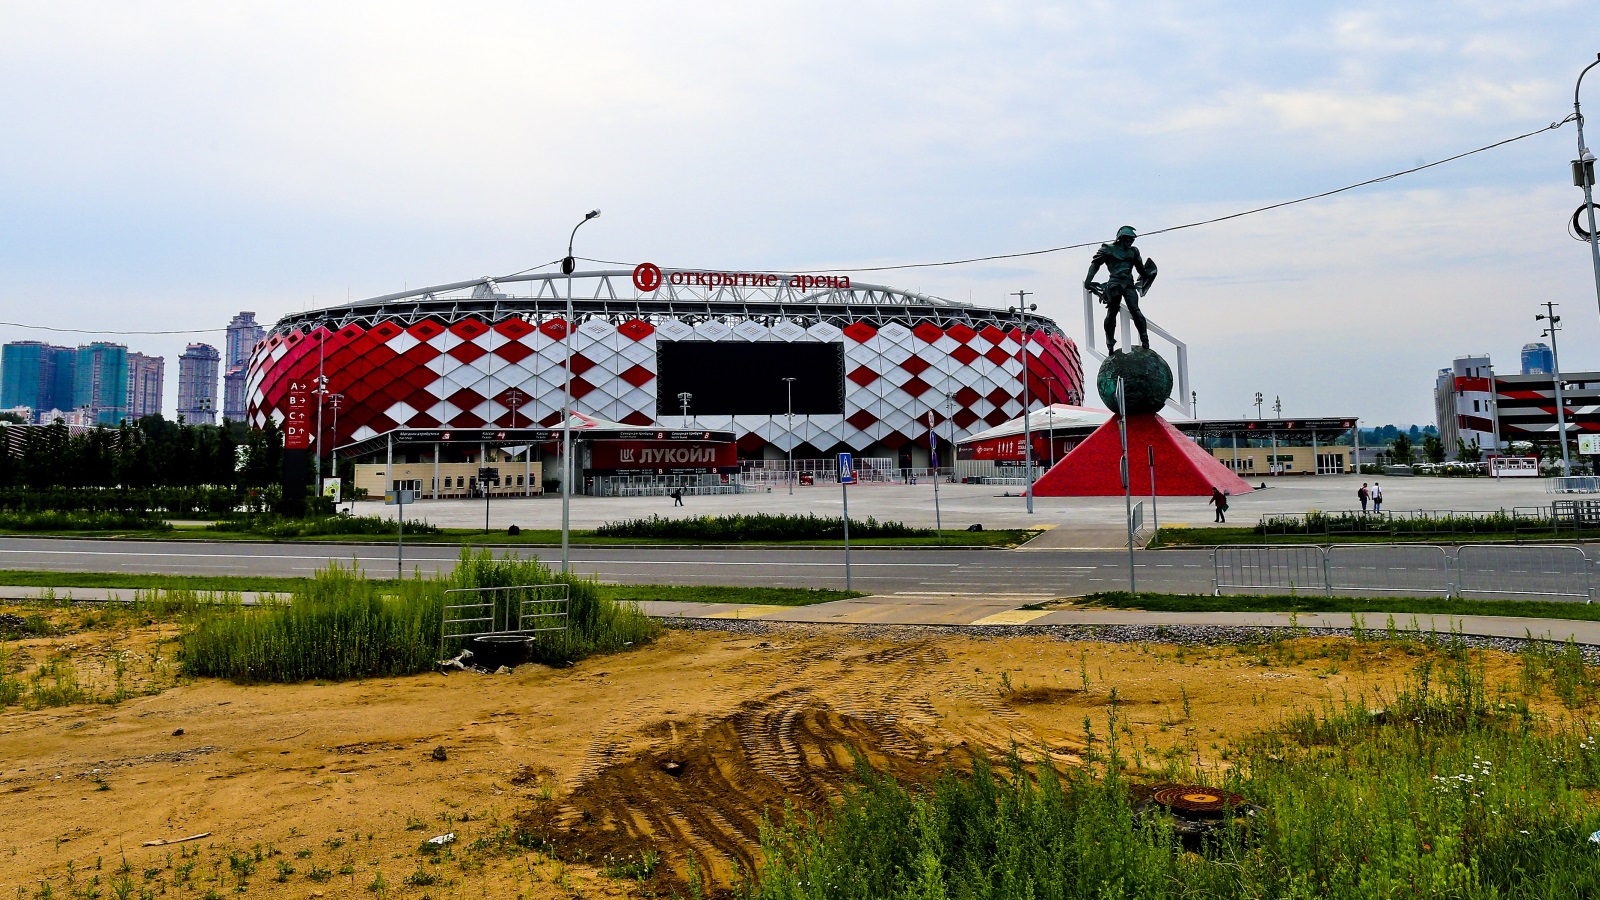 أوتكريتي هو الملعب الثاني في موسكو وهو معقل فريق سبارتاك موسكو(الأوروبية)